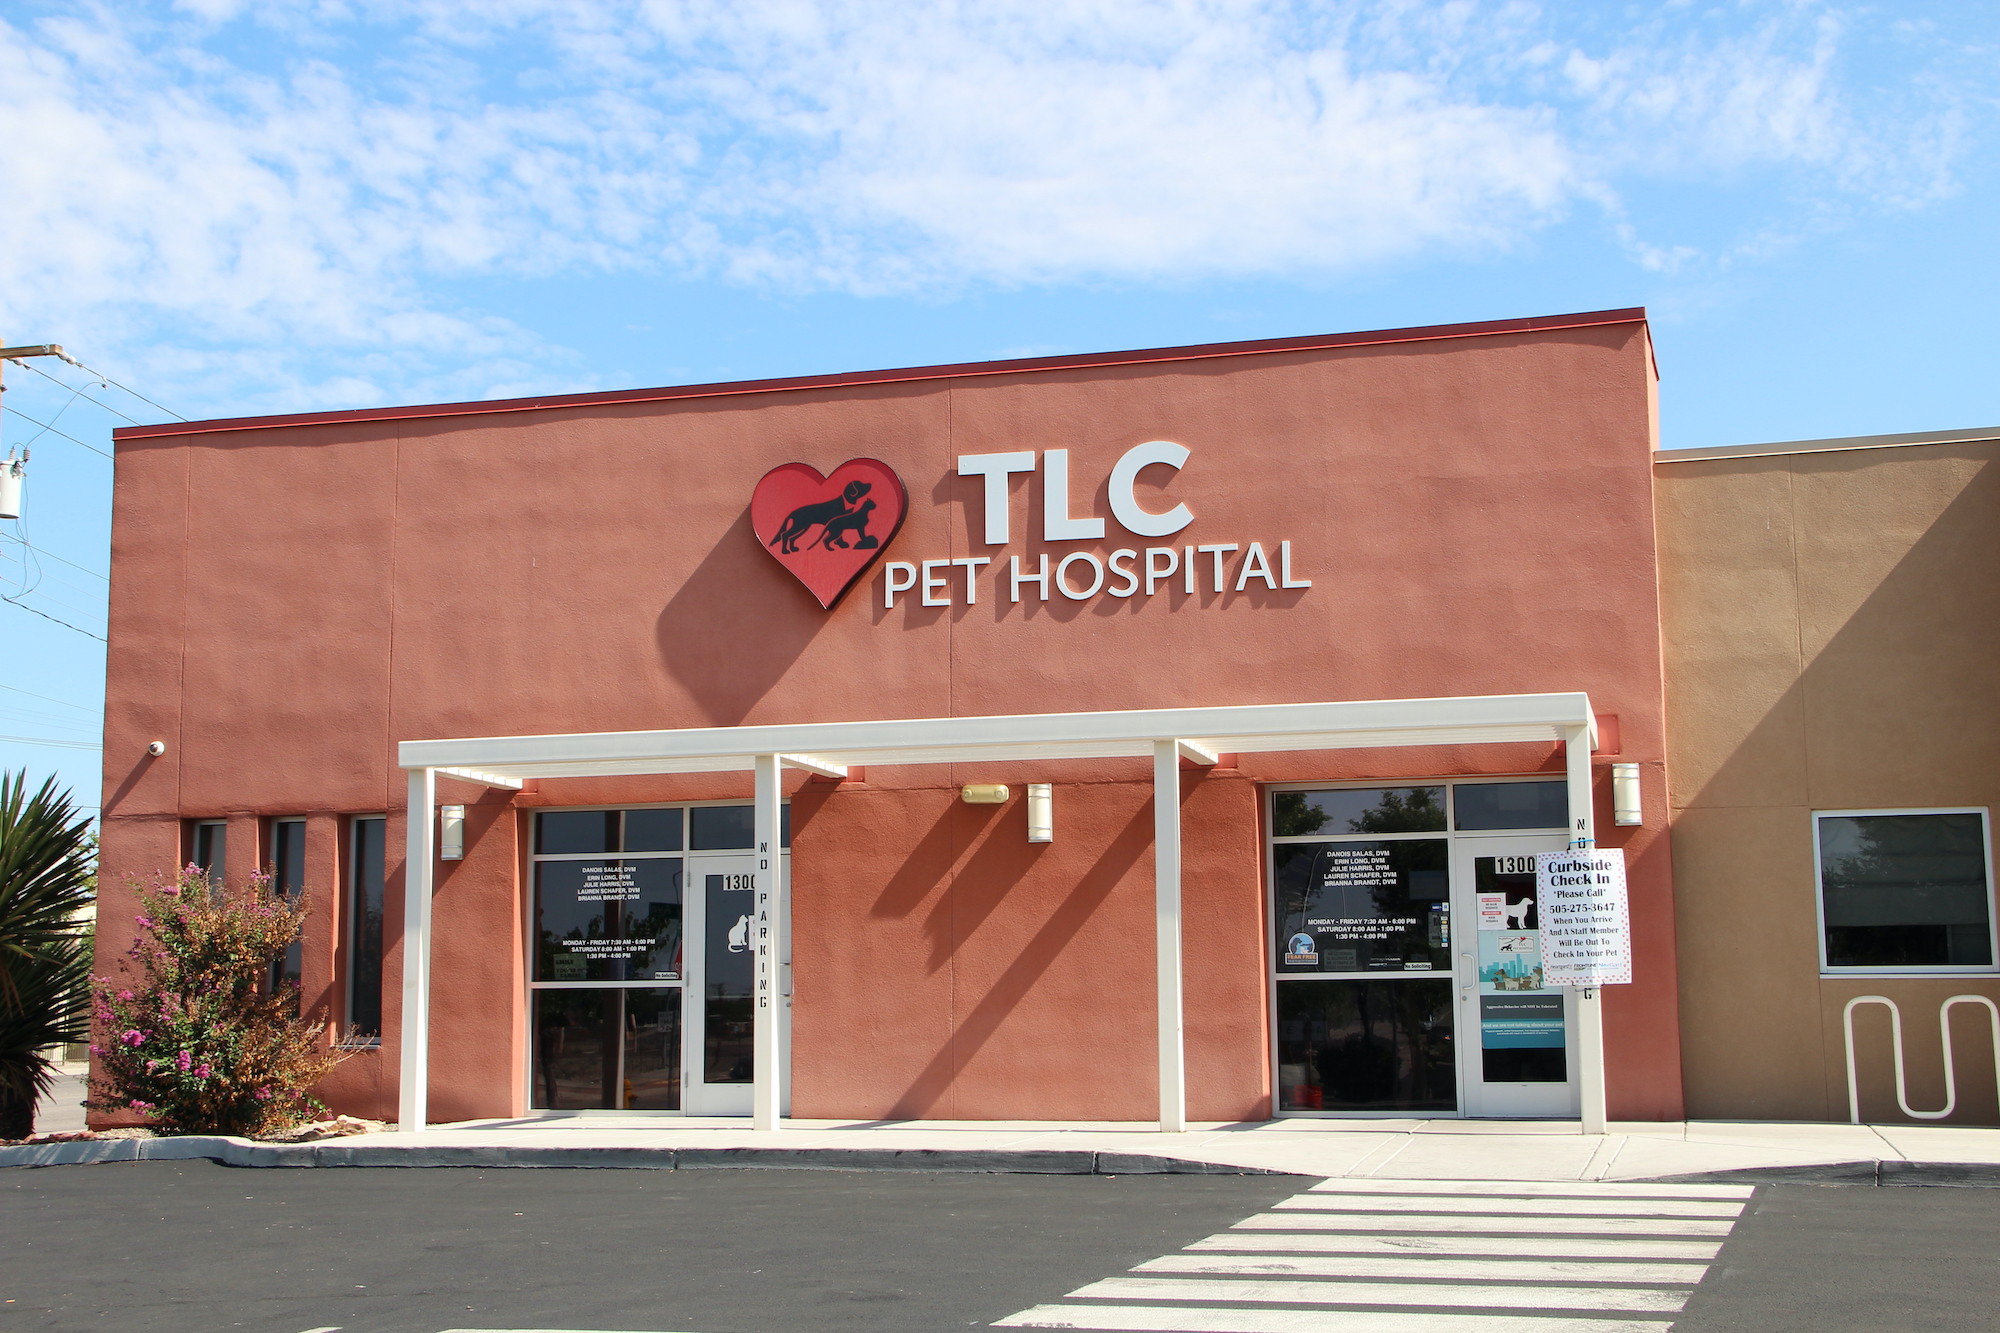 Picture of TLC Pet Hospital 1300 Wyoming Blvd NE, Albuquerque, NM 87112, United States